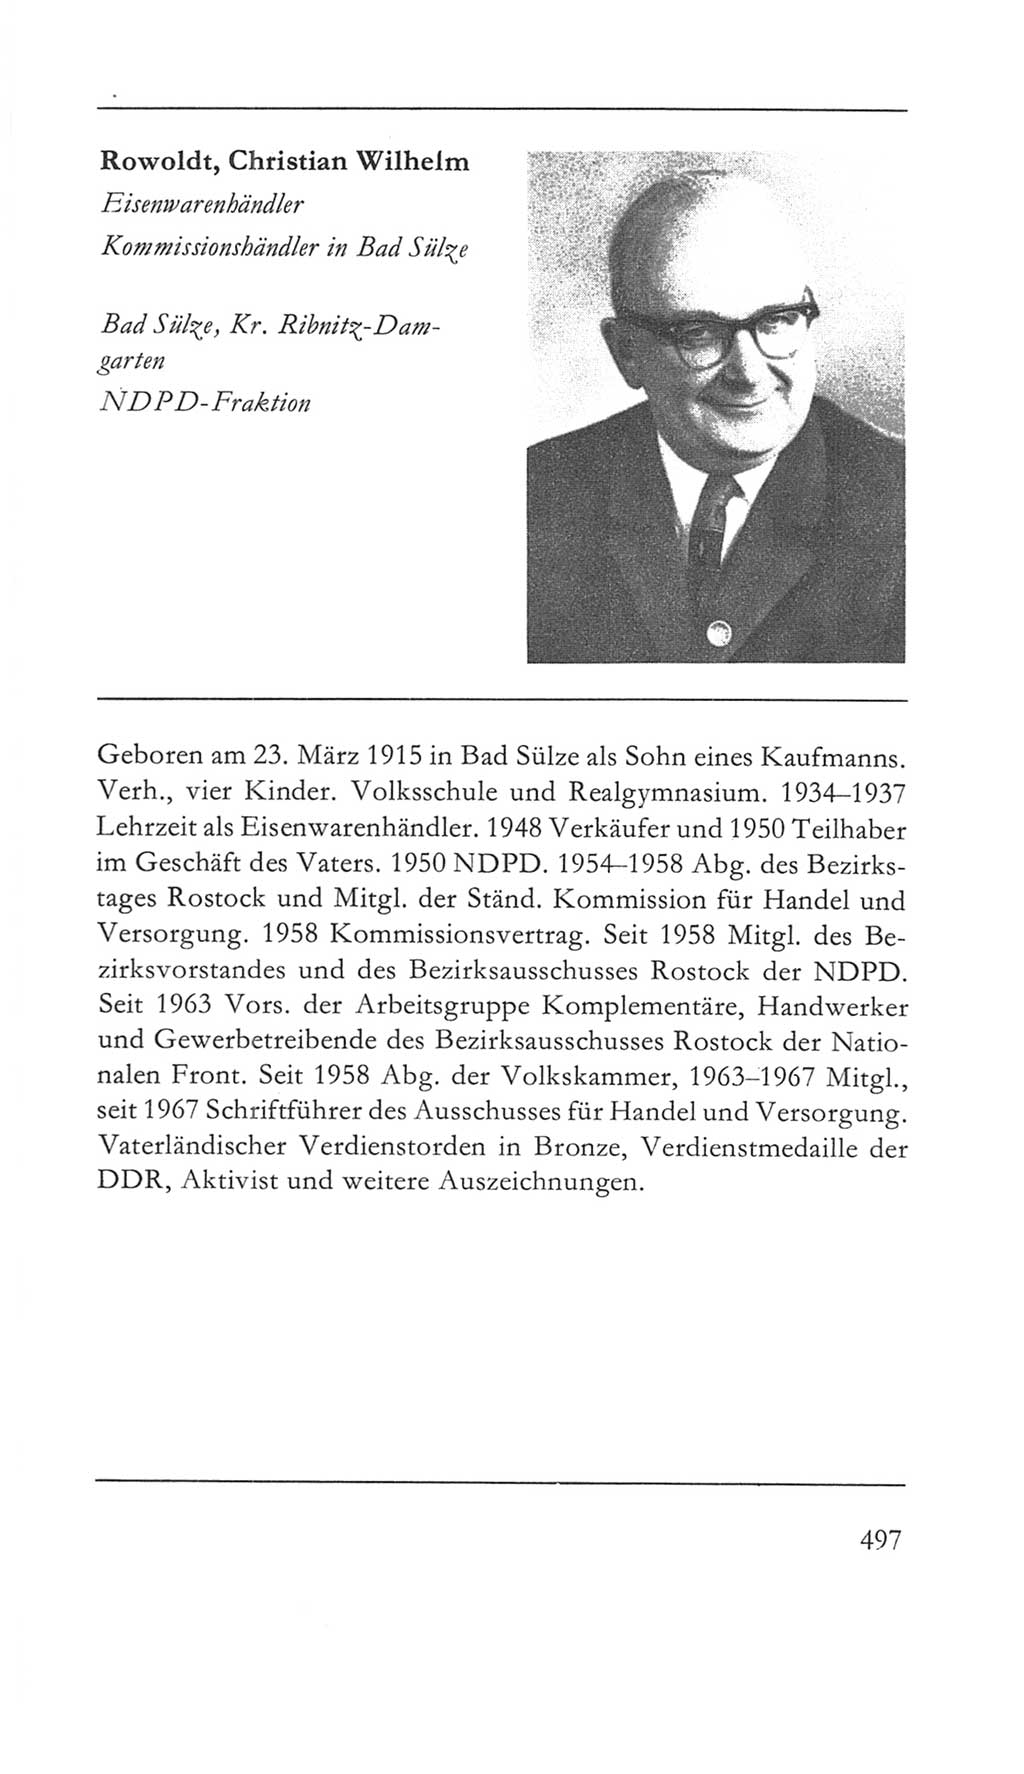 Volkskammer (VK) der Deutschen Demokratischen Republik (DDR) 5. Wahlperiode 1967-1971, Seite 497 (VK. DDR 5. WP. 1967-1971, S. 497)